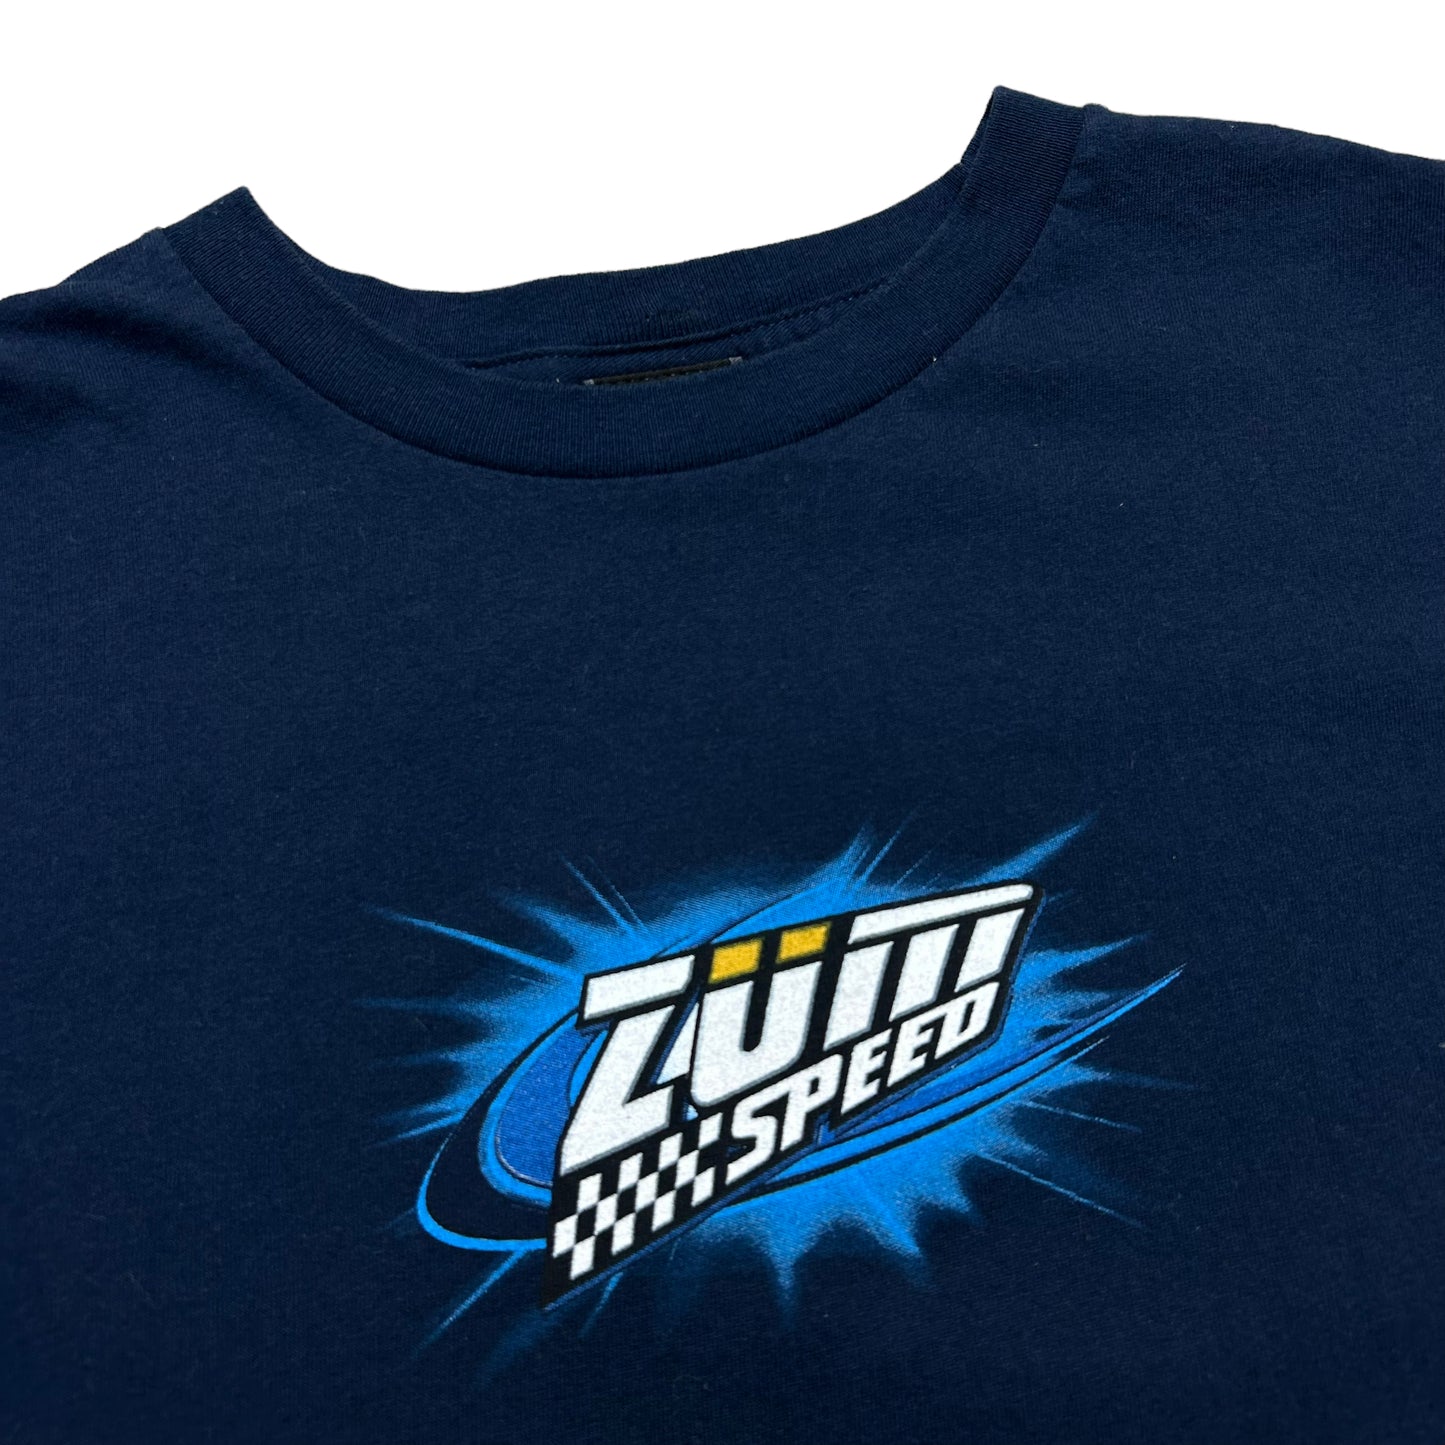 Vintage Y2K “Zum Speed” Dragon/Car Navy Blue Graphic T-Shirt - Size XL